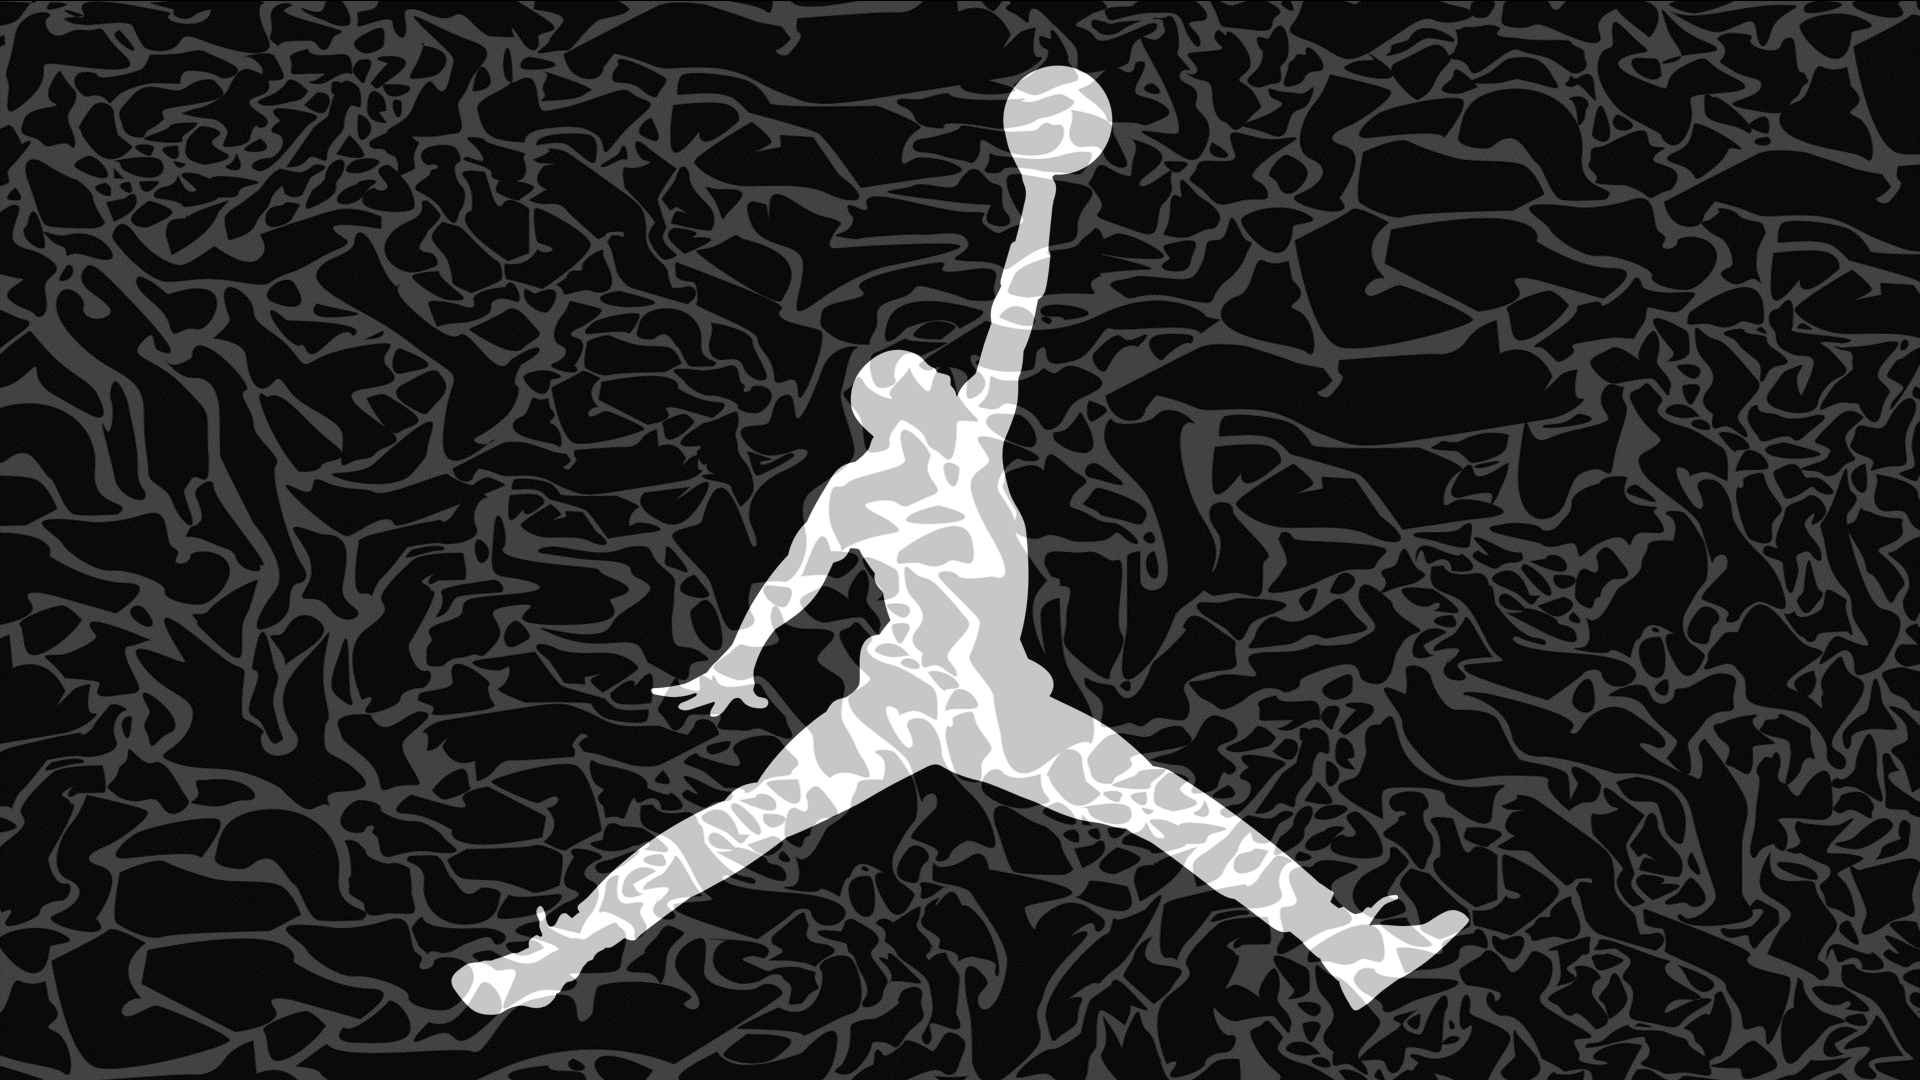 エアジョーダンのロゴの壁紙,バスケットボール選手,プレーヤー,ハンドボール,フットボール,図